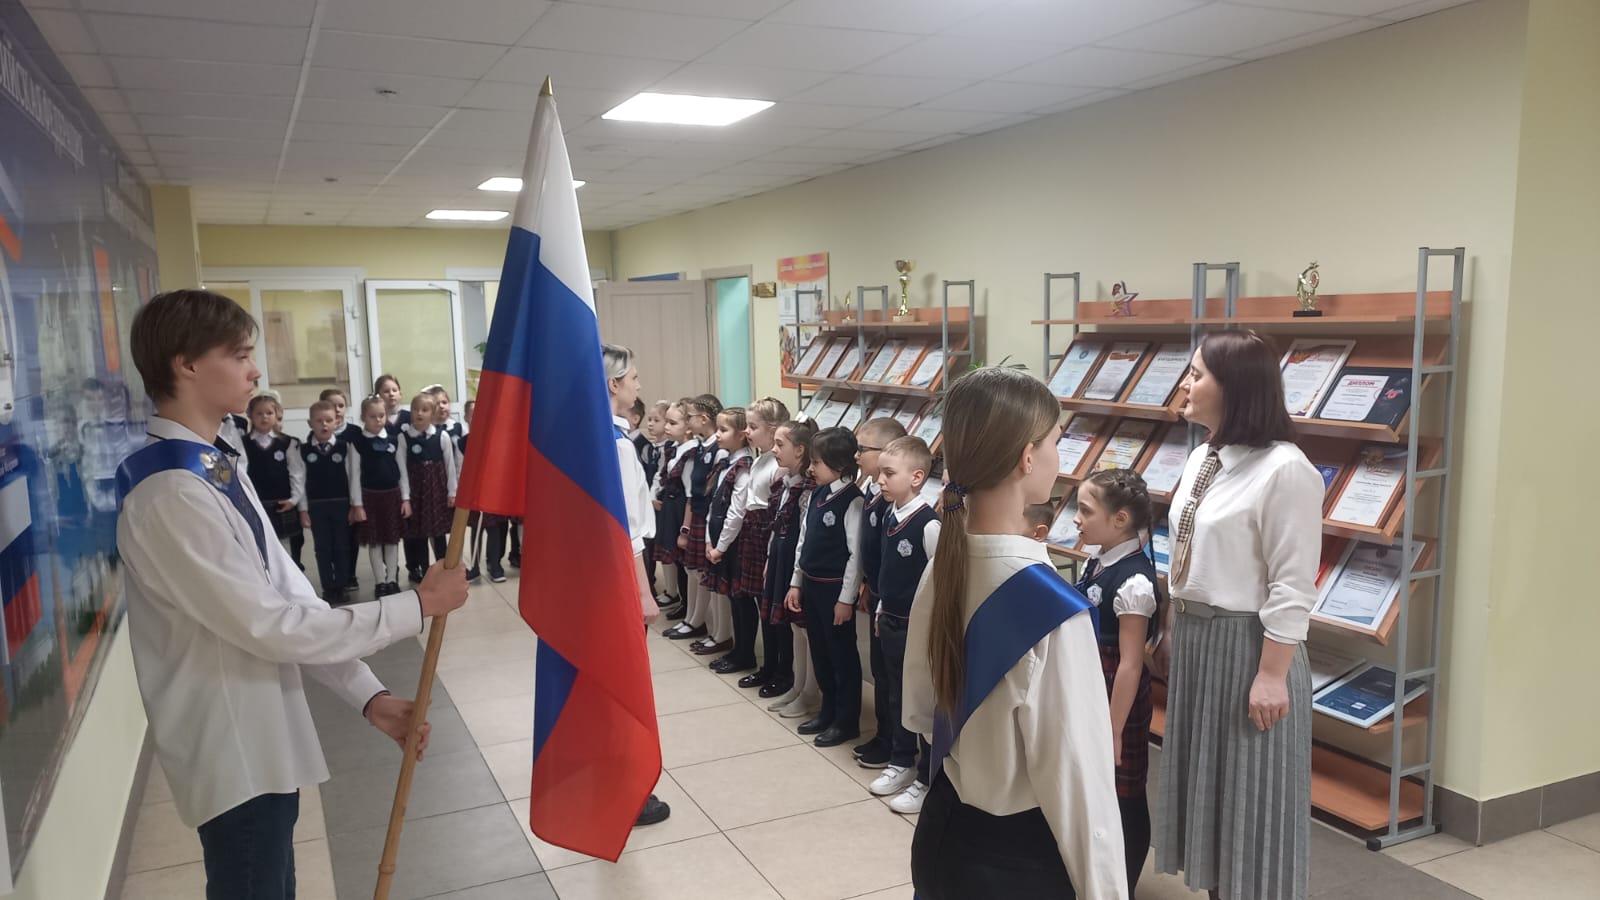 27 февраля в школе прошла ставшая традиционной торжественная церемония выноса государственного флага Российской Федерации. Сегодня на торжественной линейке участвовали ребята 1А класса.